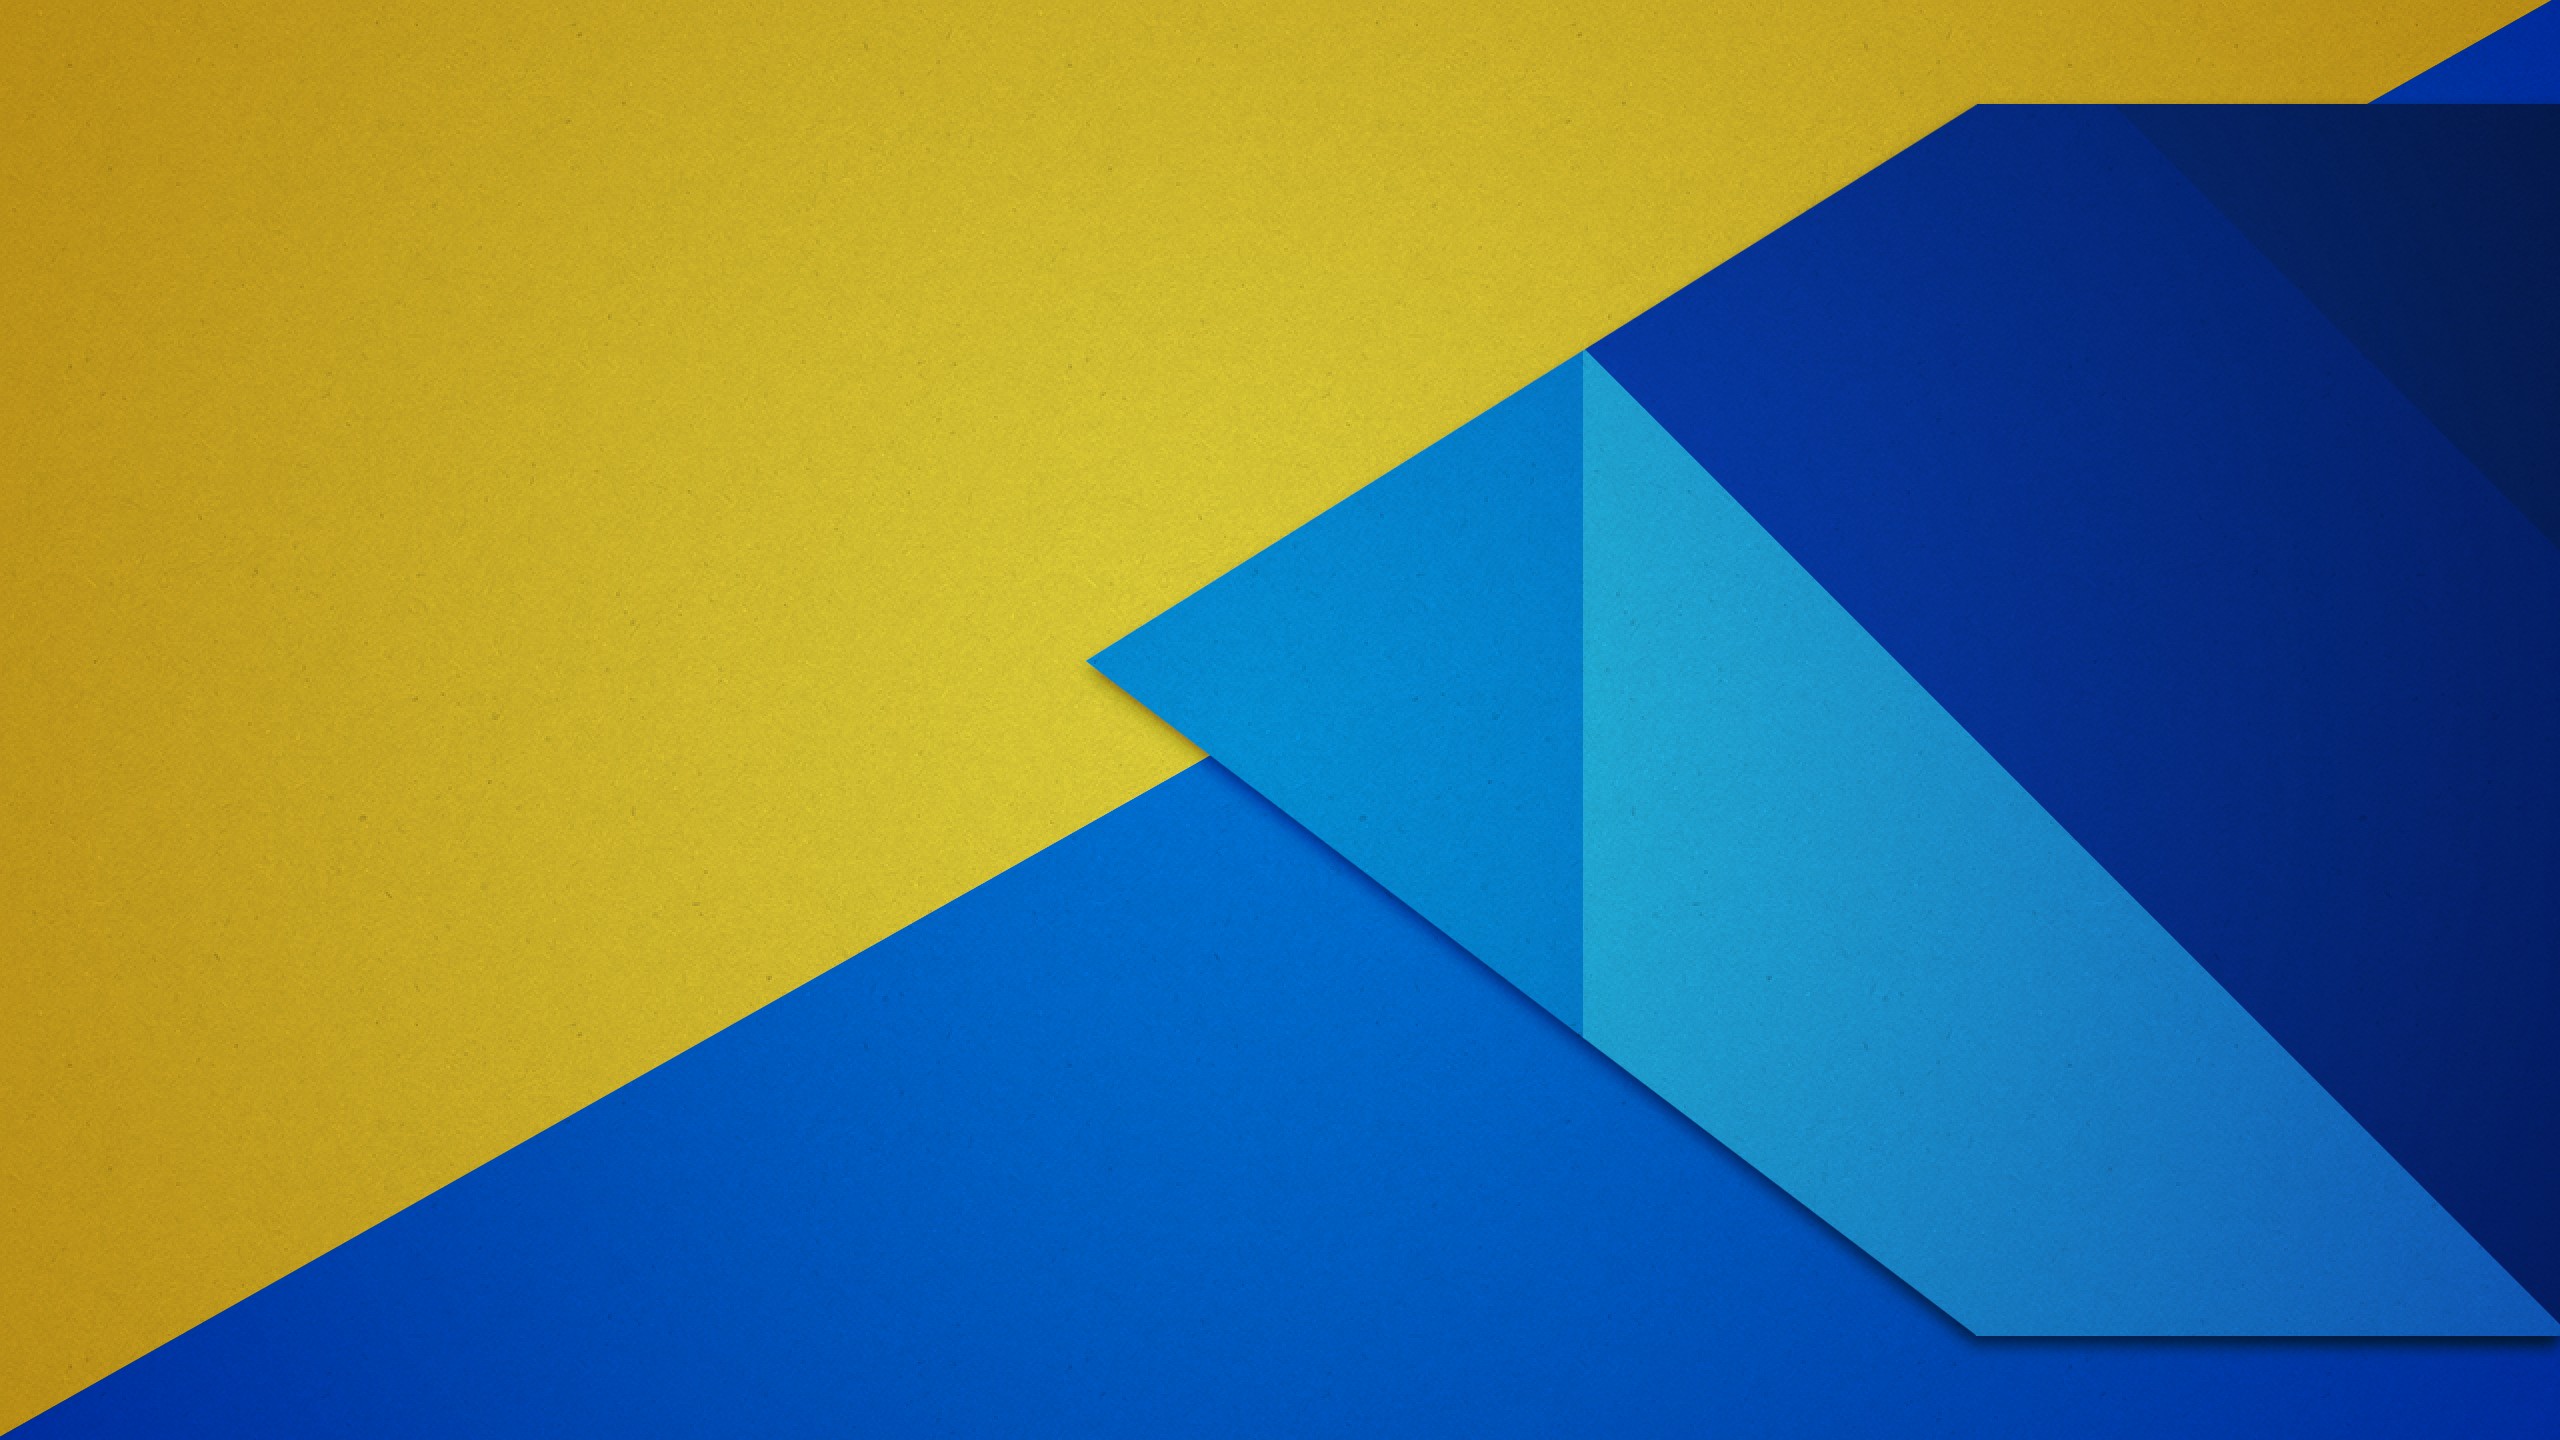 fond d'écran android guimauve 1080p,bleu,jaune,bleu cobalt,turquoise,ligne